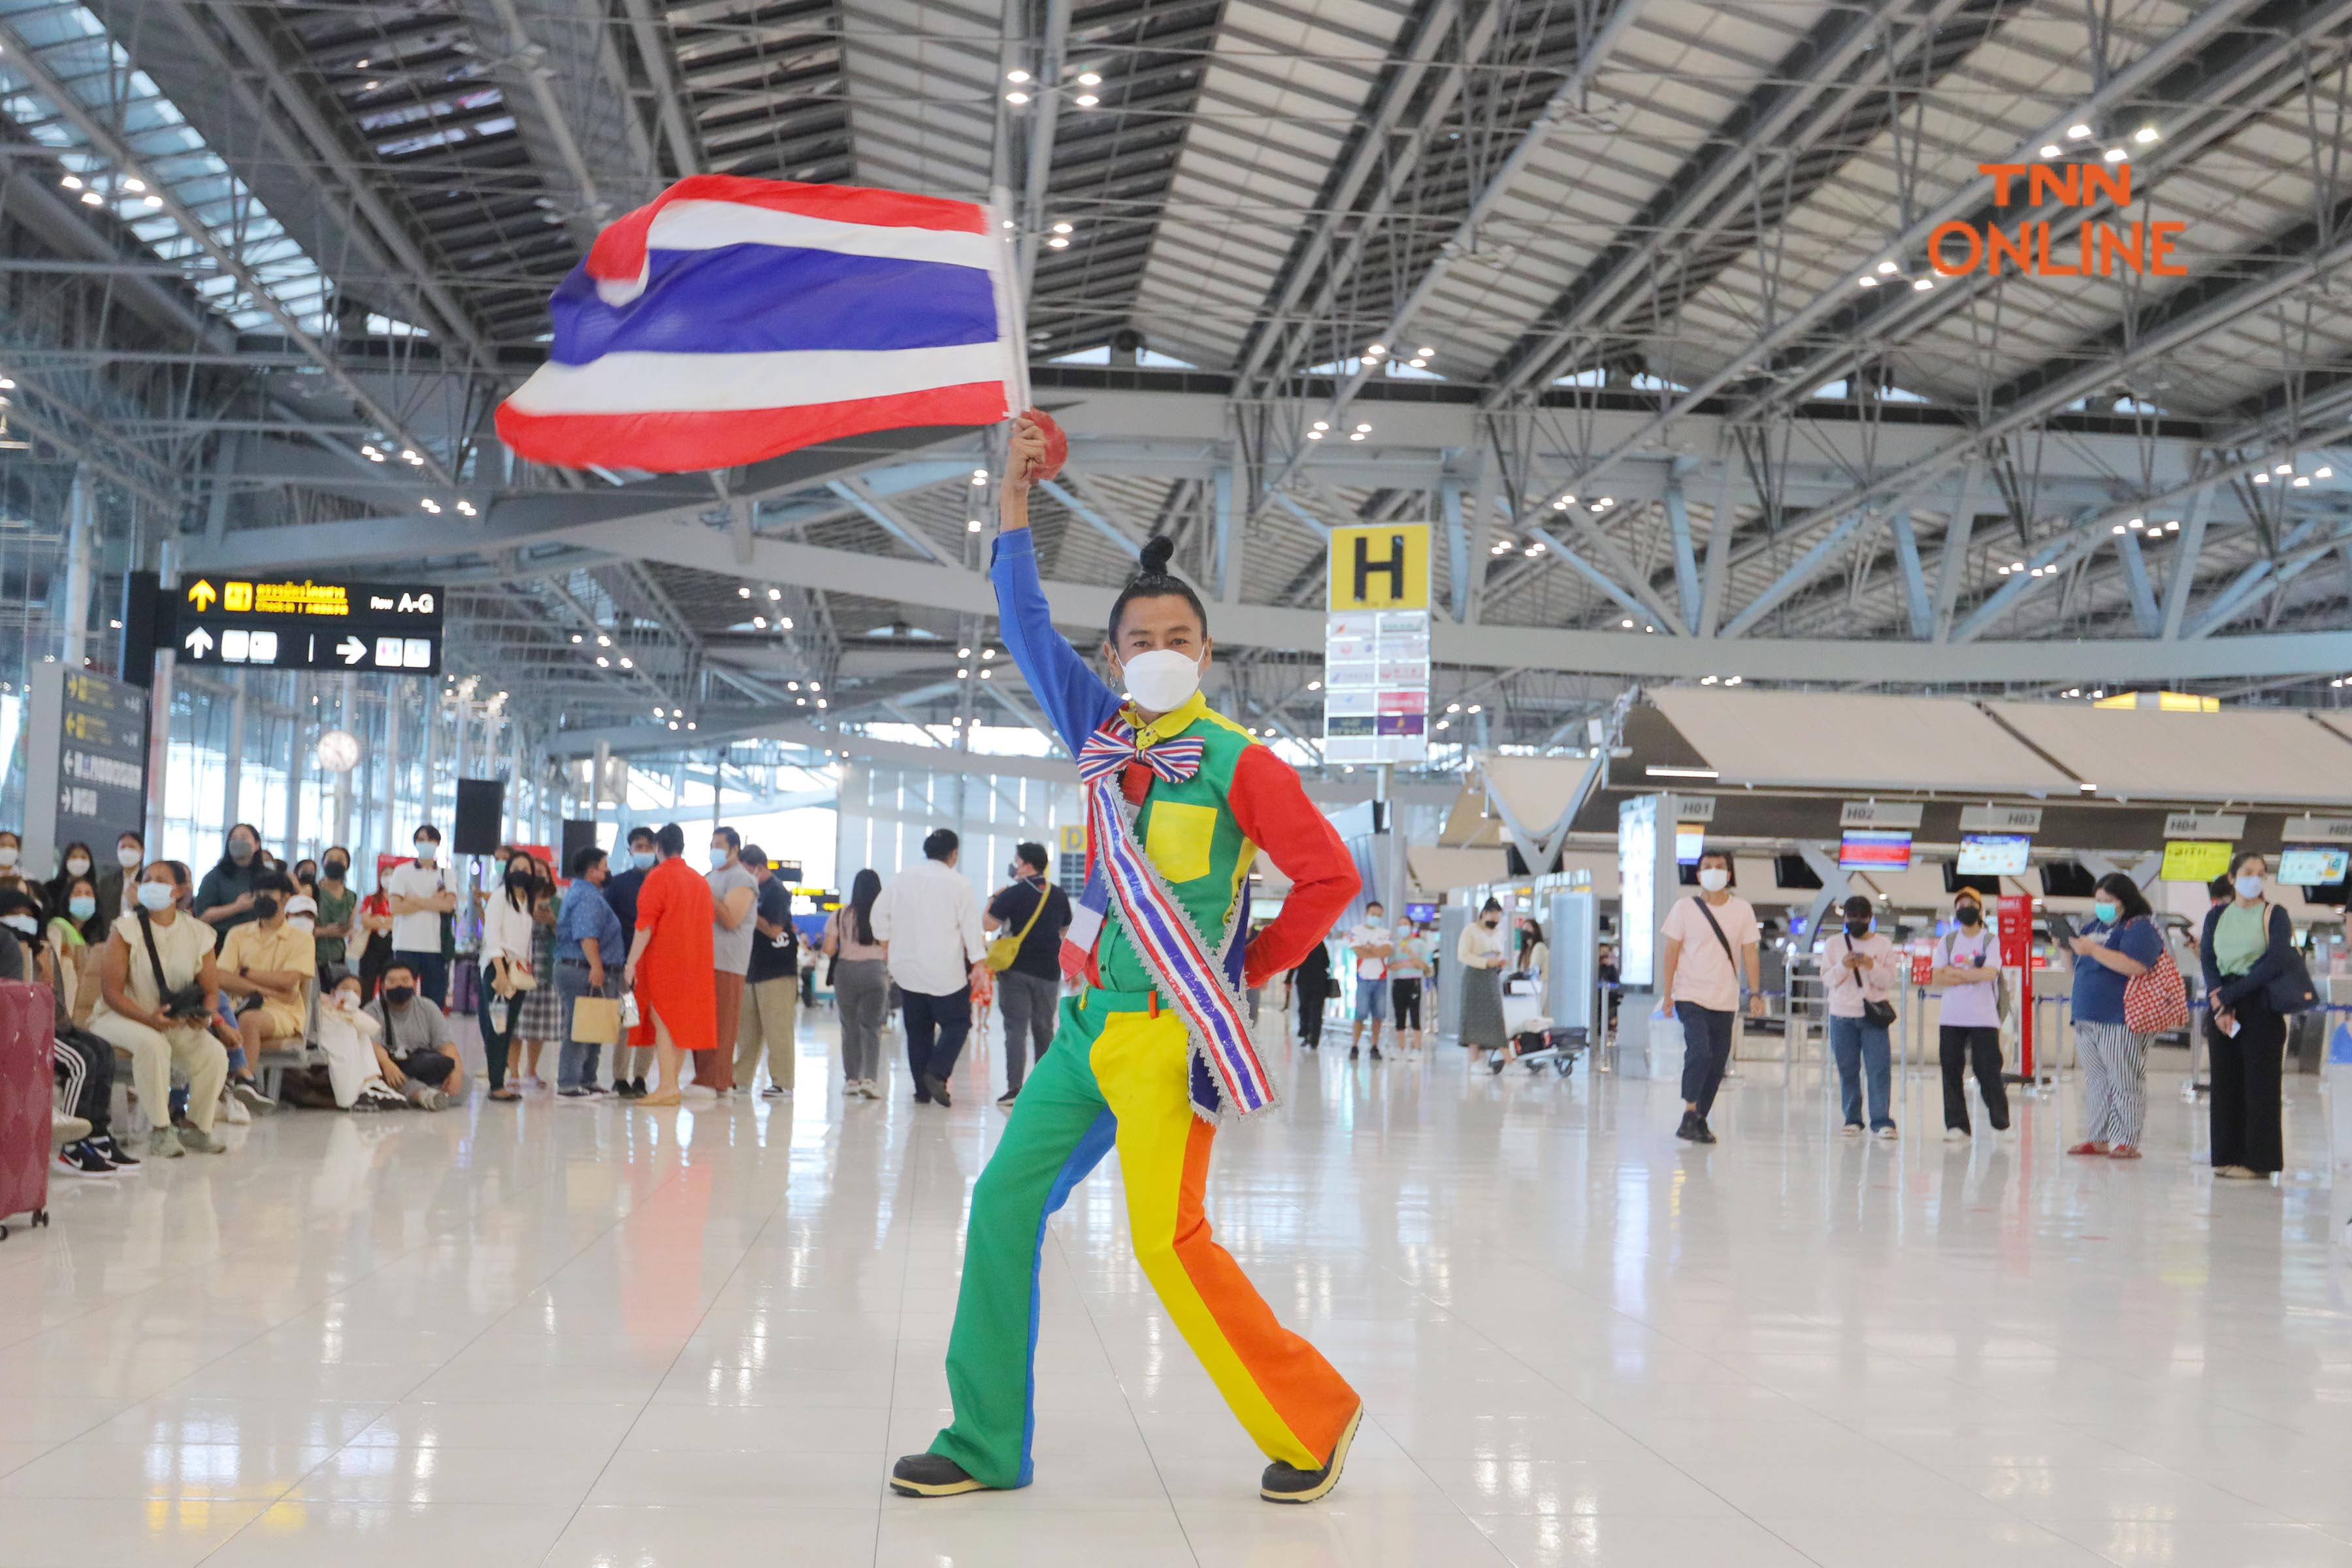 ประมวลภาพ “แอนชิลี” พาธงไทยลัดฟ้าสู่เวทีมิสยูนิเวิร์ส 2021